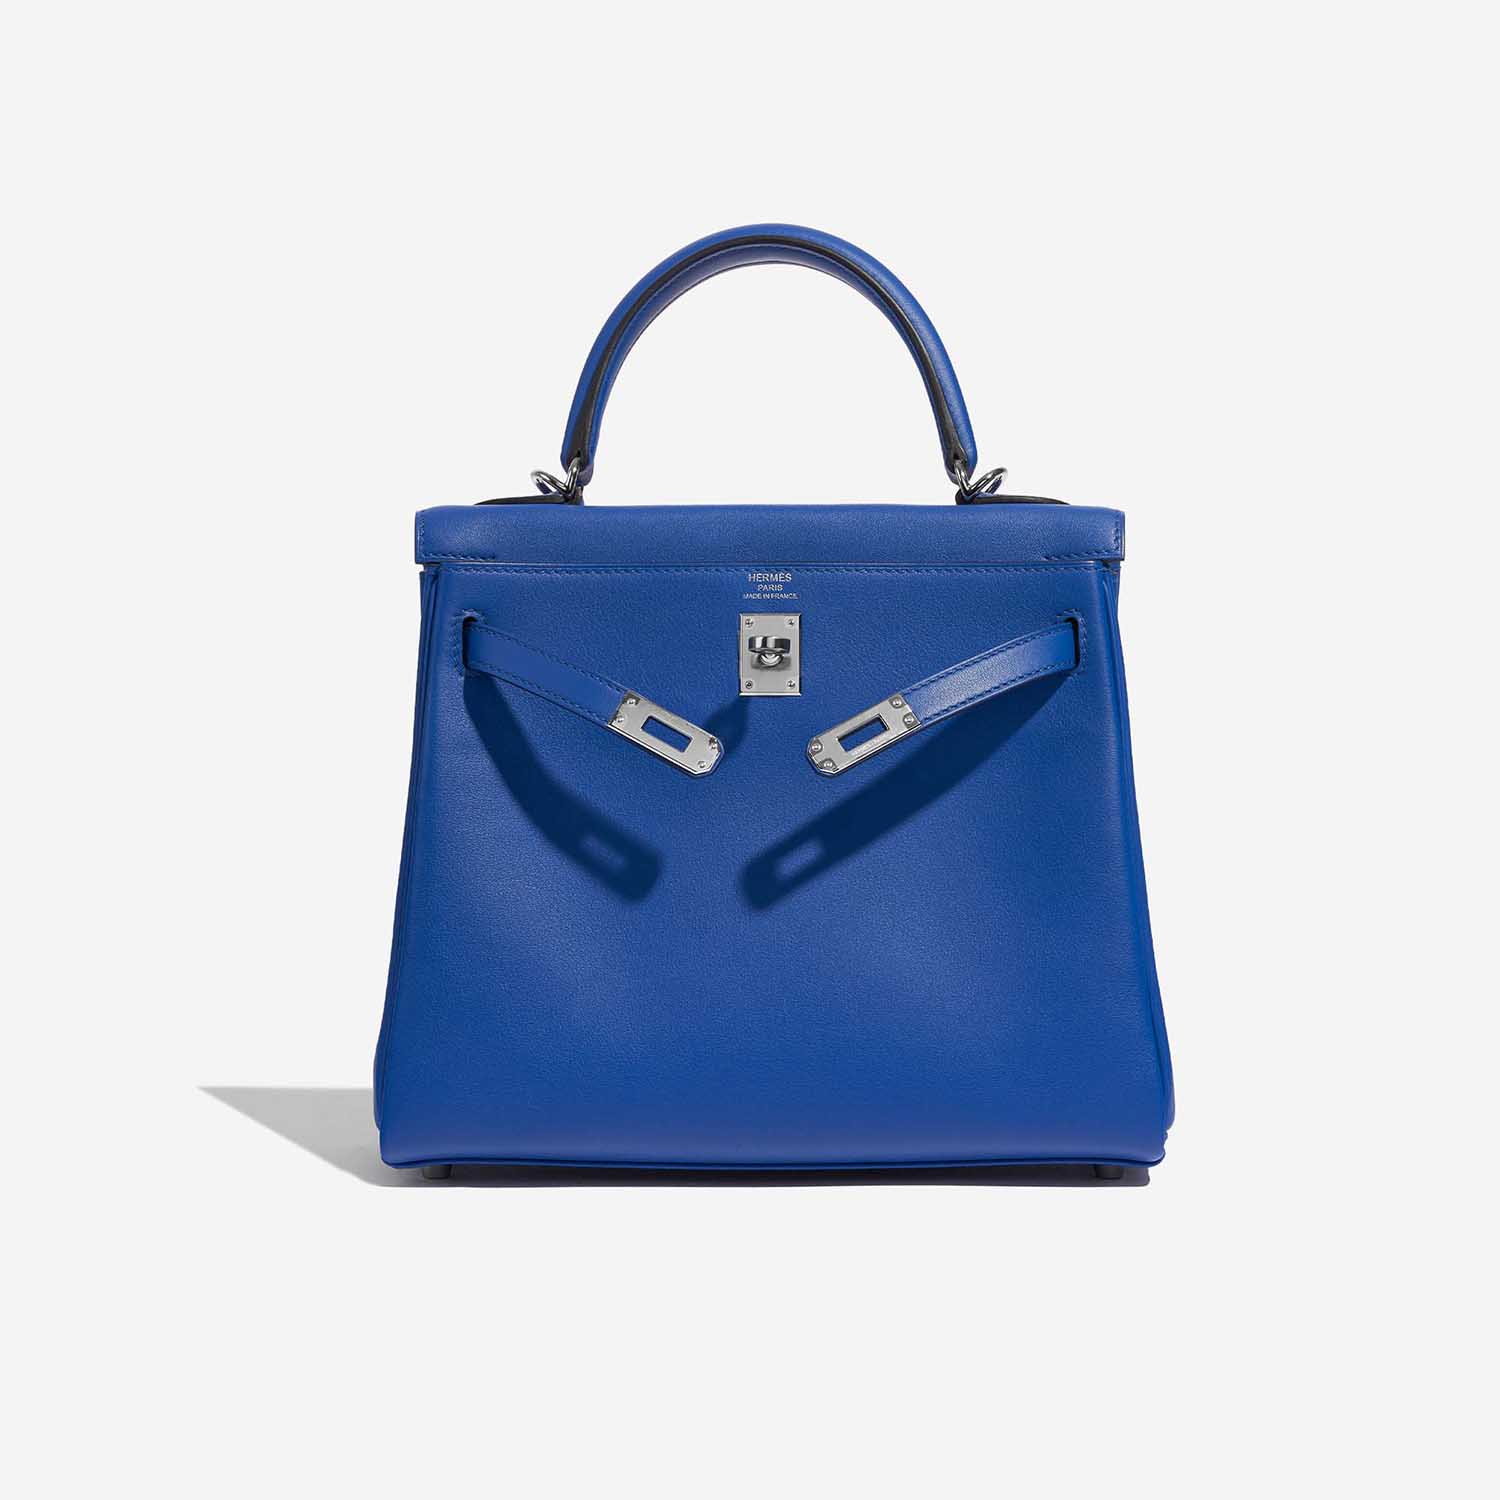 Pre-owned Hermès Tasche Kelly 25 Swift Blau Frankreich Blau Front Open | Verkaufen Sie Ihre Designer-Tasche auf Saclab.com